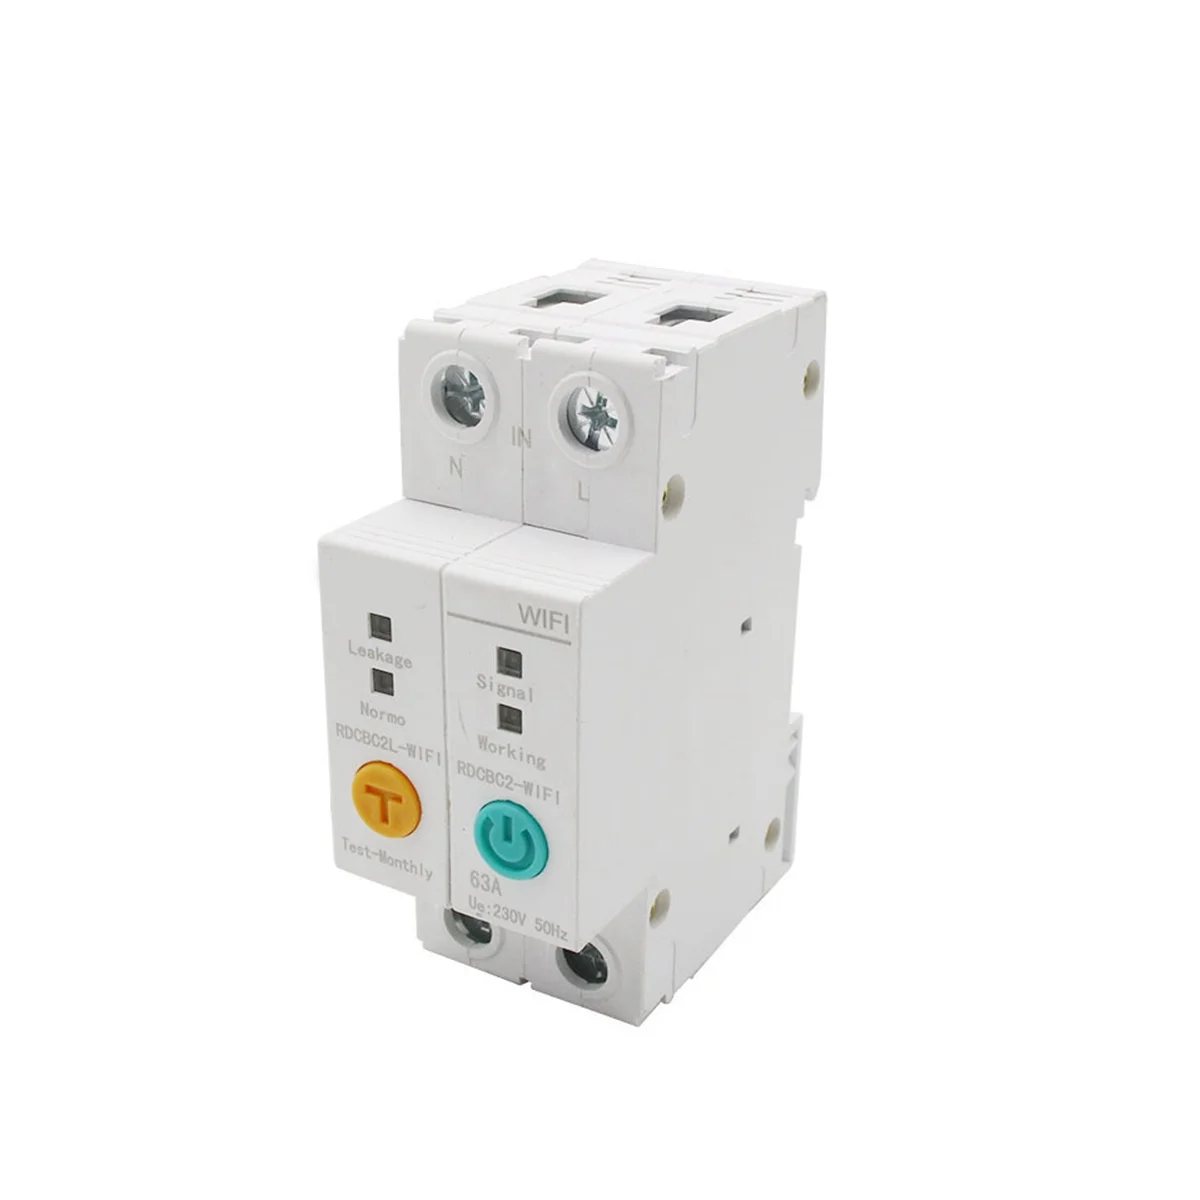 

2P 63A WIFI автоматический выключатель мощность энергии кВтч измеритель переключатель реле вольтметр защита от утечки тока